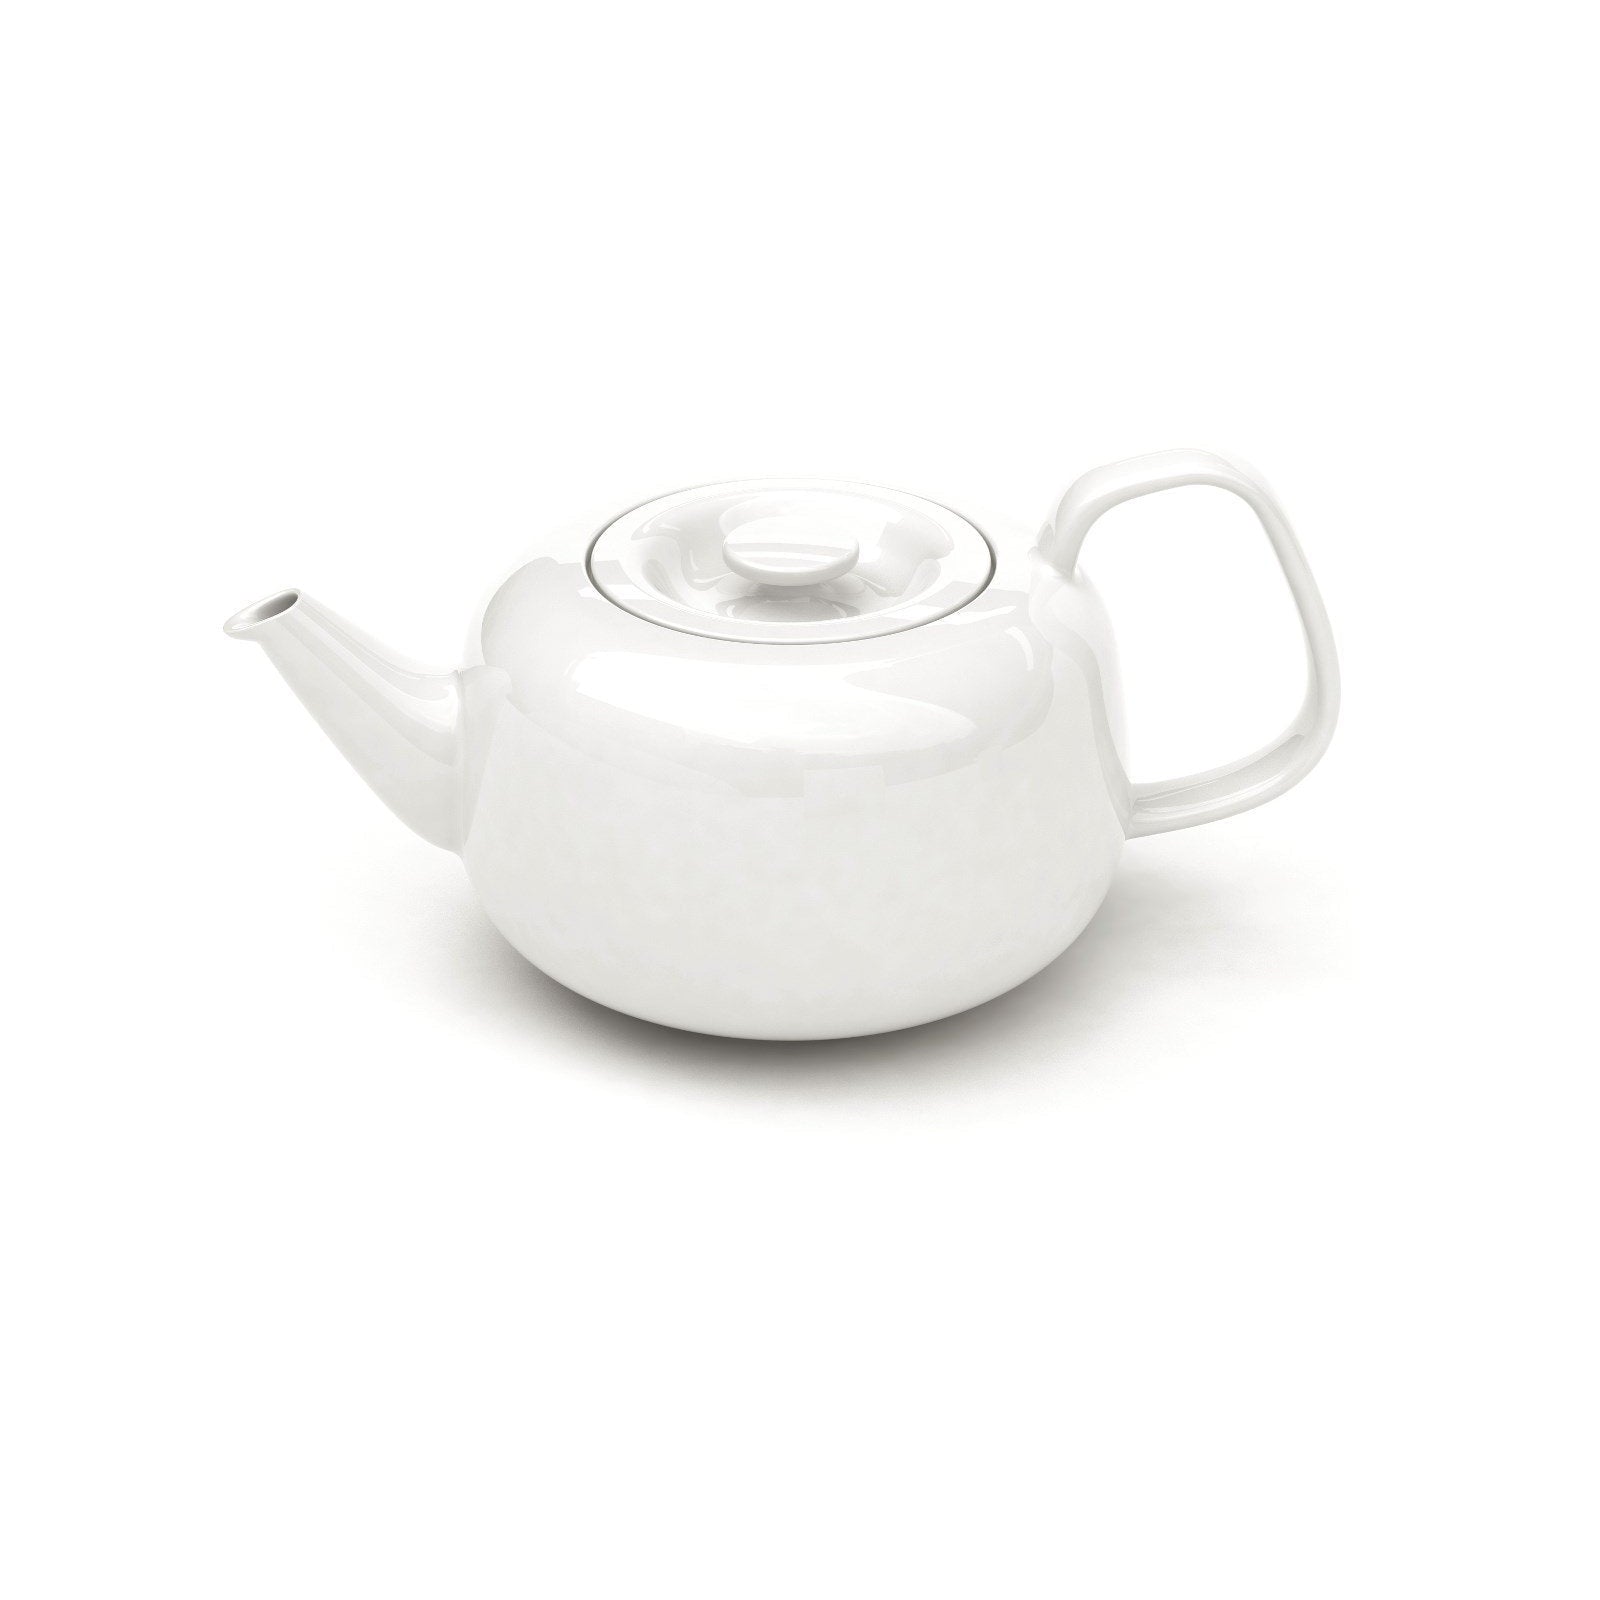 Iittala raami teapot bianco, 1,1 l